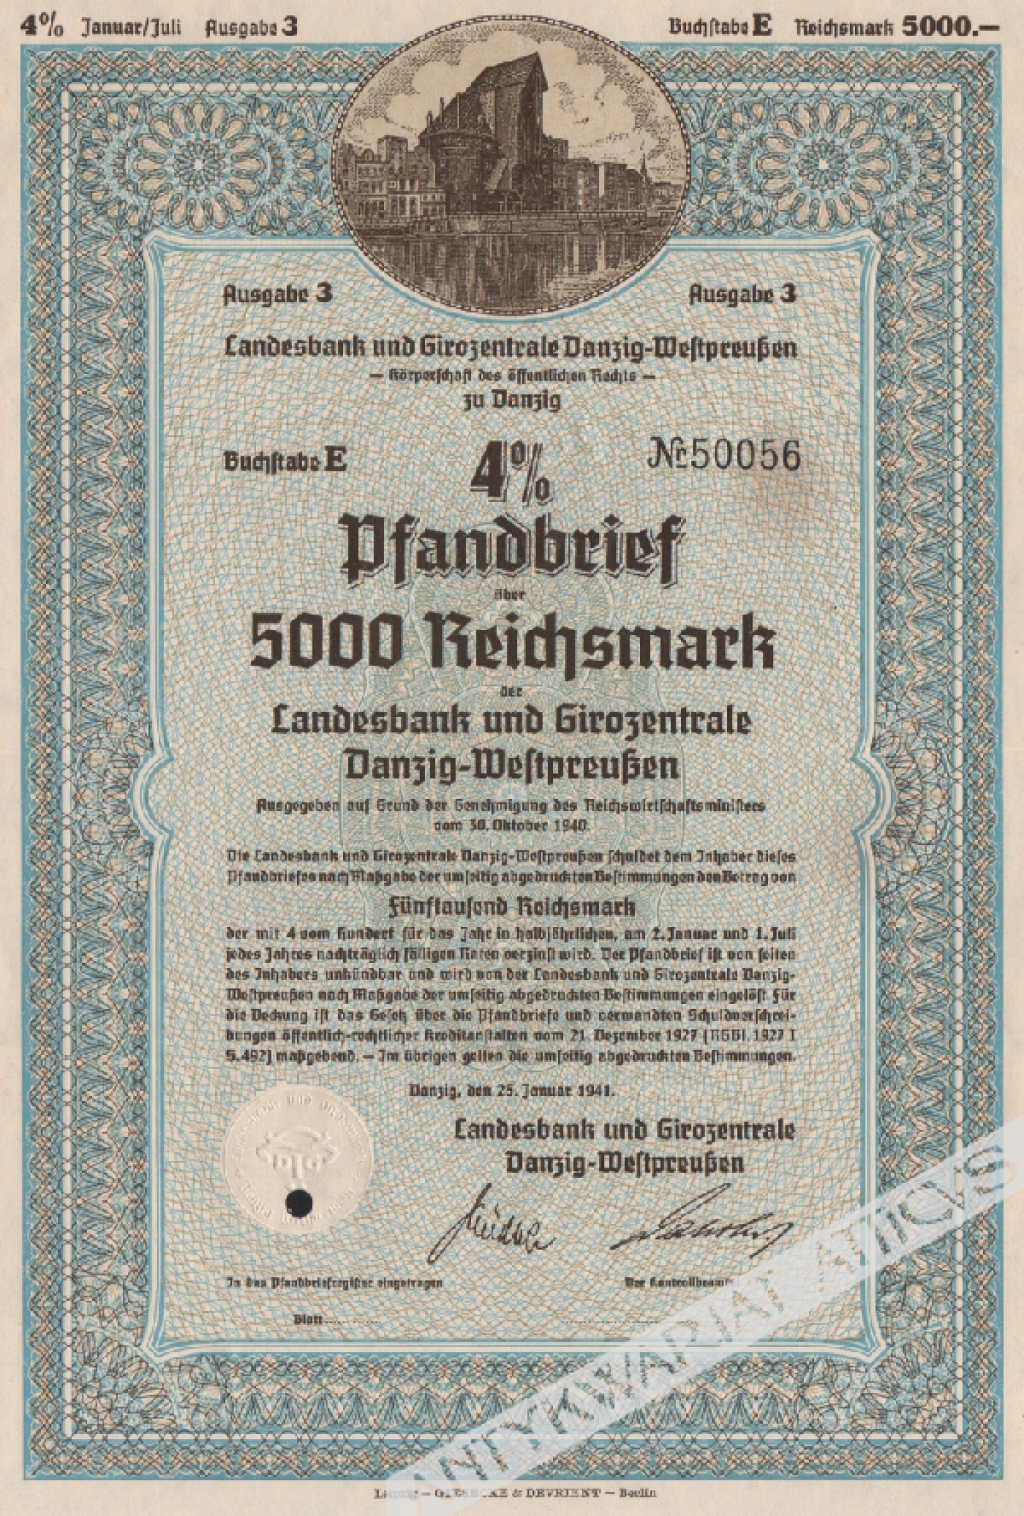 [list zastawny] 4% Pfandbrief uber 5000 Reichsmark der Landesbank und Girozentrale Danzig-Westpreussen